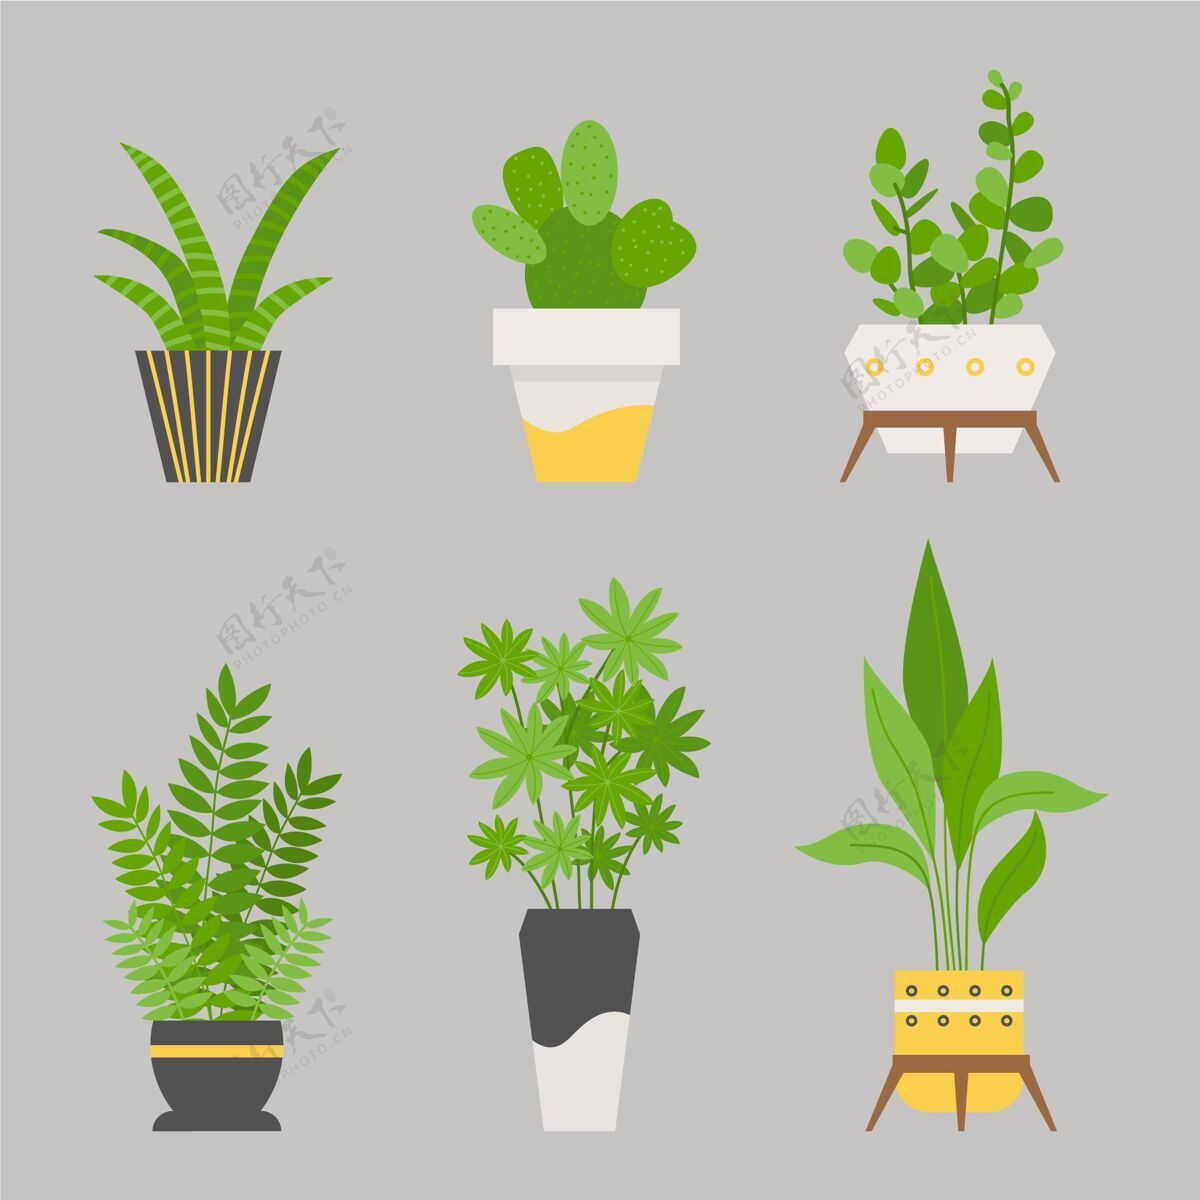 分类平房植物收藏室内植物植物自然